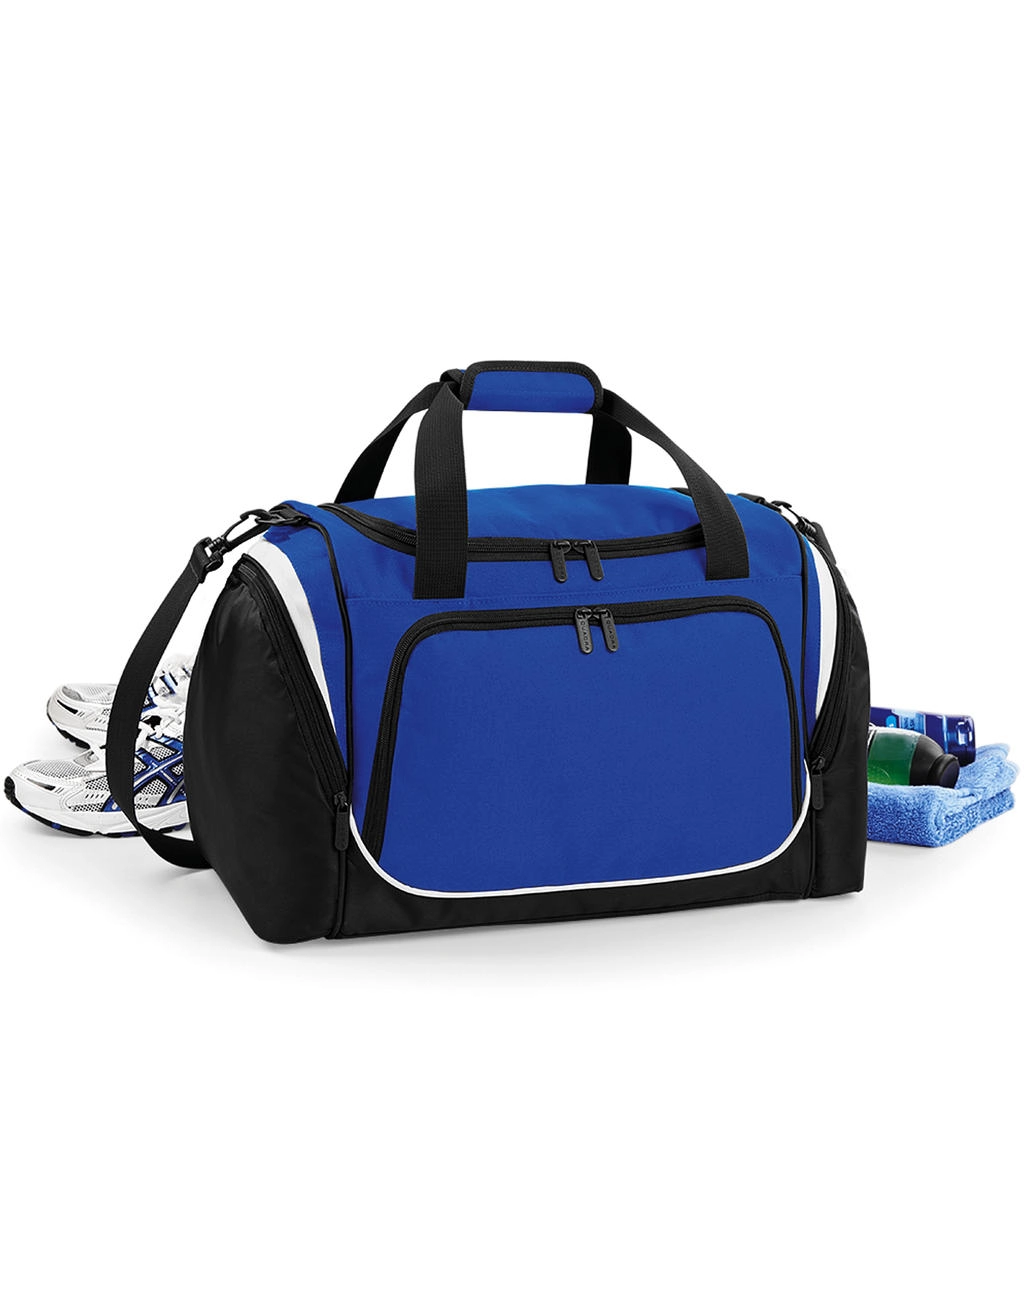 Pro Team Locker Bag zum Besticken und Bedrucken mit Ihren Logo, Schriftzug oder Motiv.